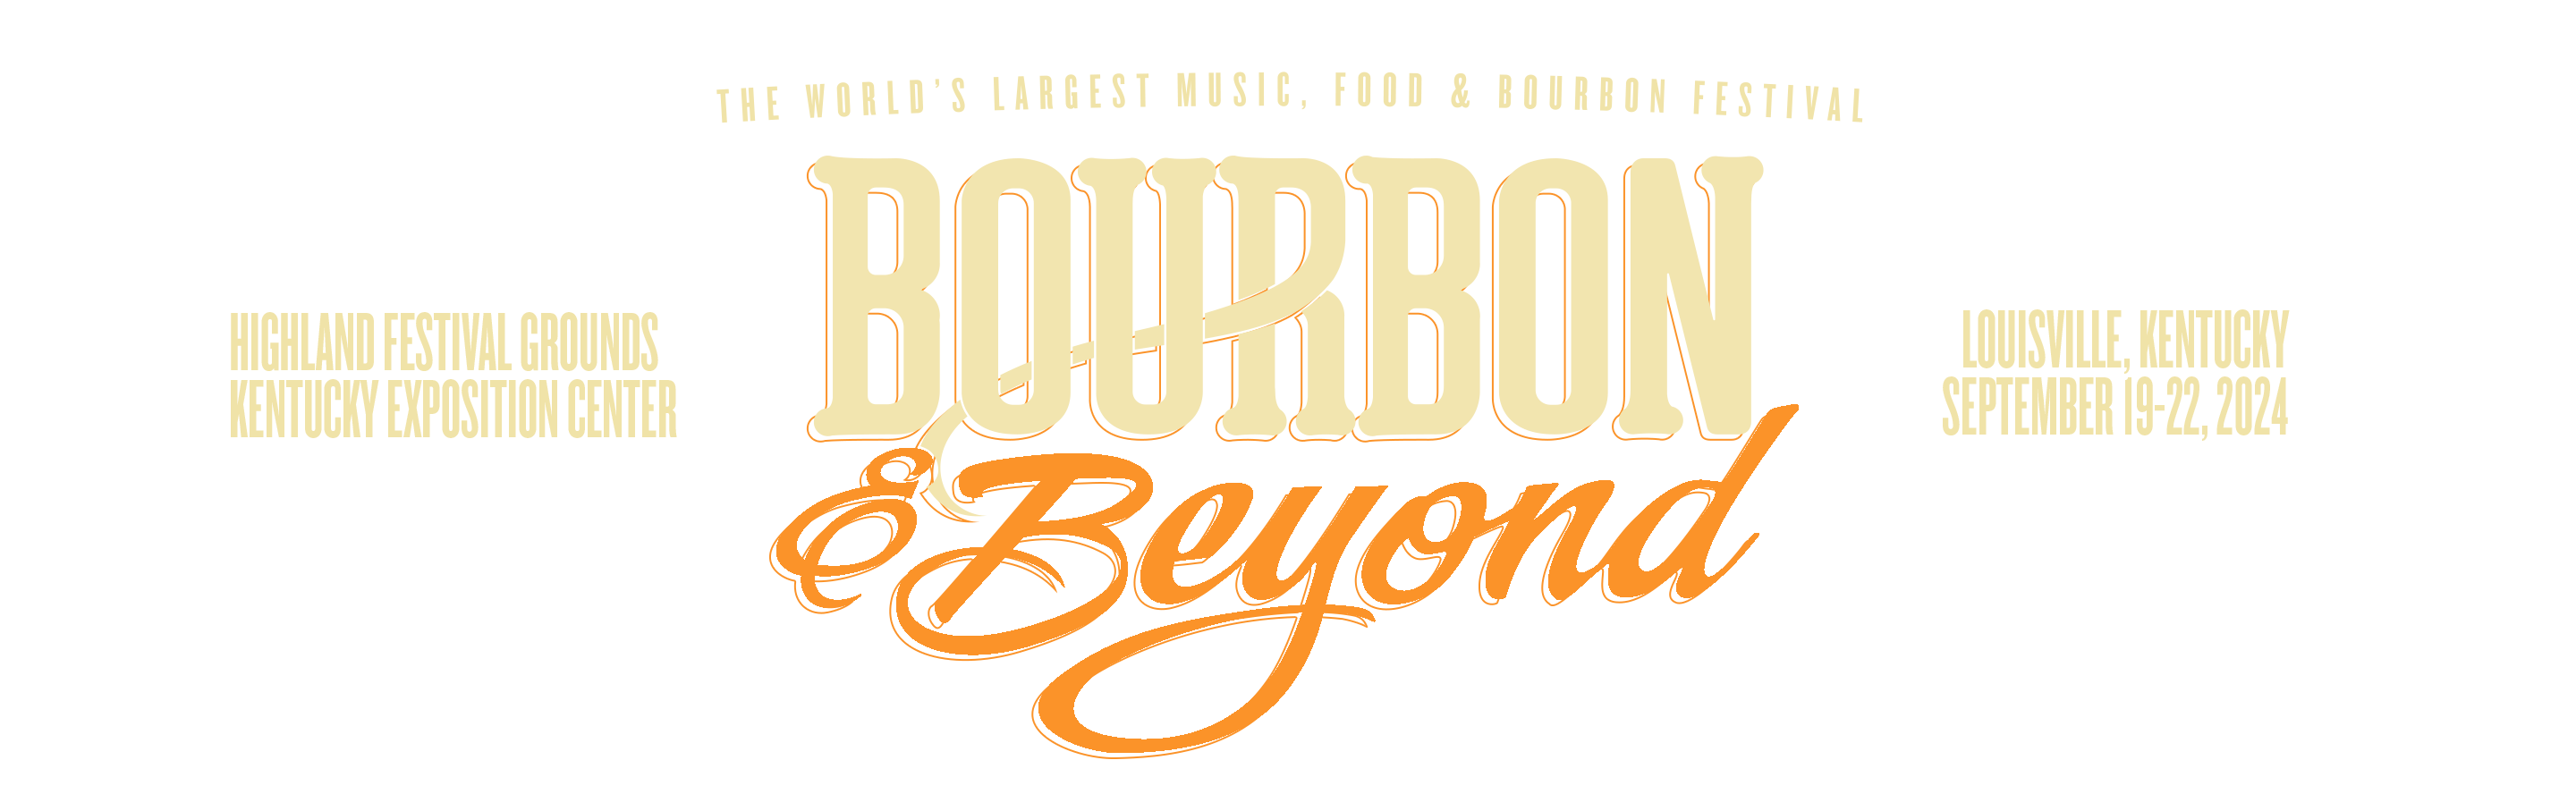 Home - Bourbon & Beyond